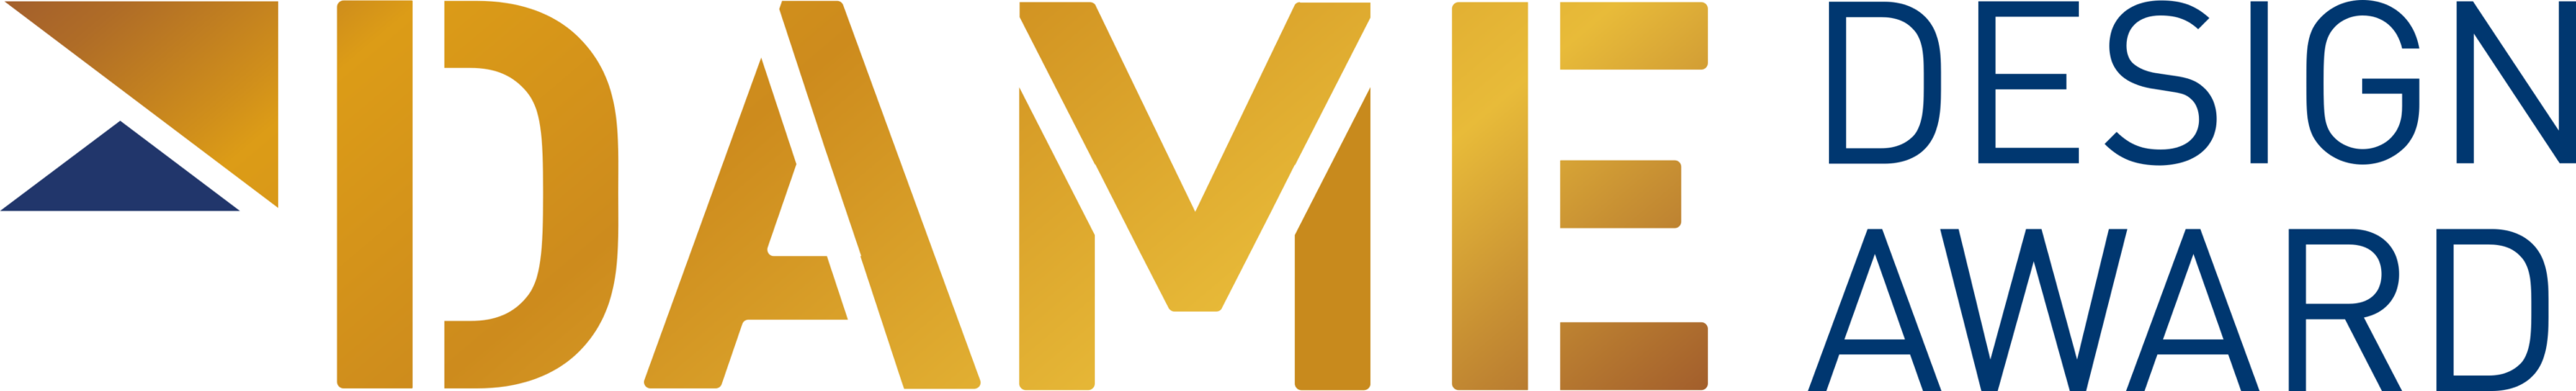 DAME Design Award Logo